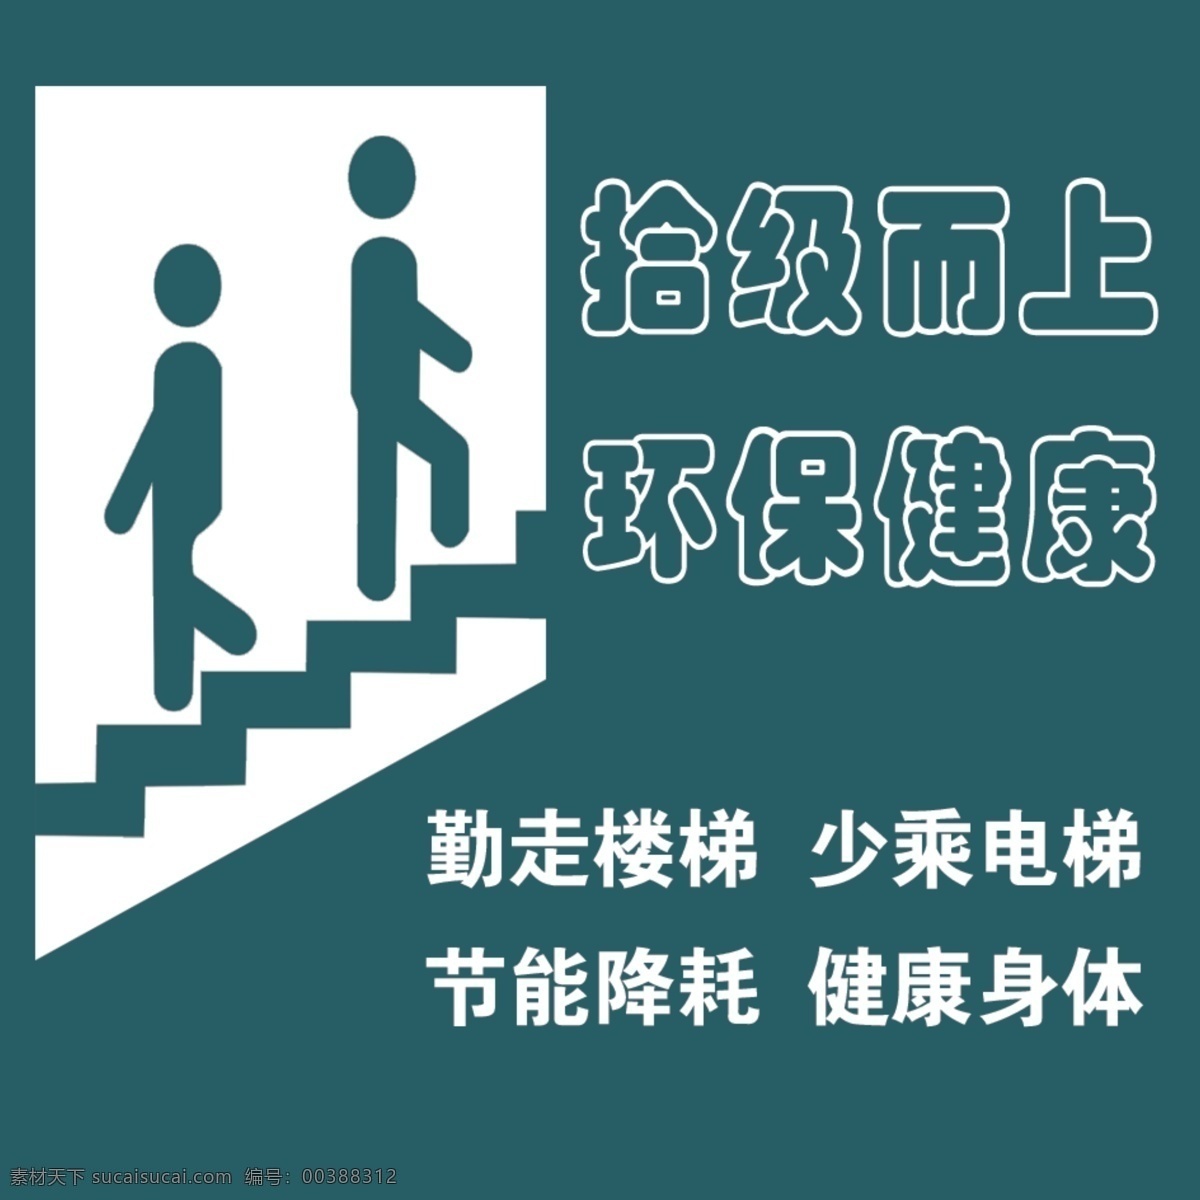 电梯 小 标签 楼梯 走楼梯 小人 走路 上下 台阶 拾级而上 少乘电梯 步行 环保 节能